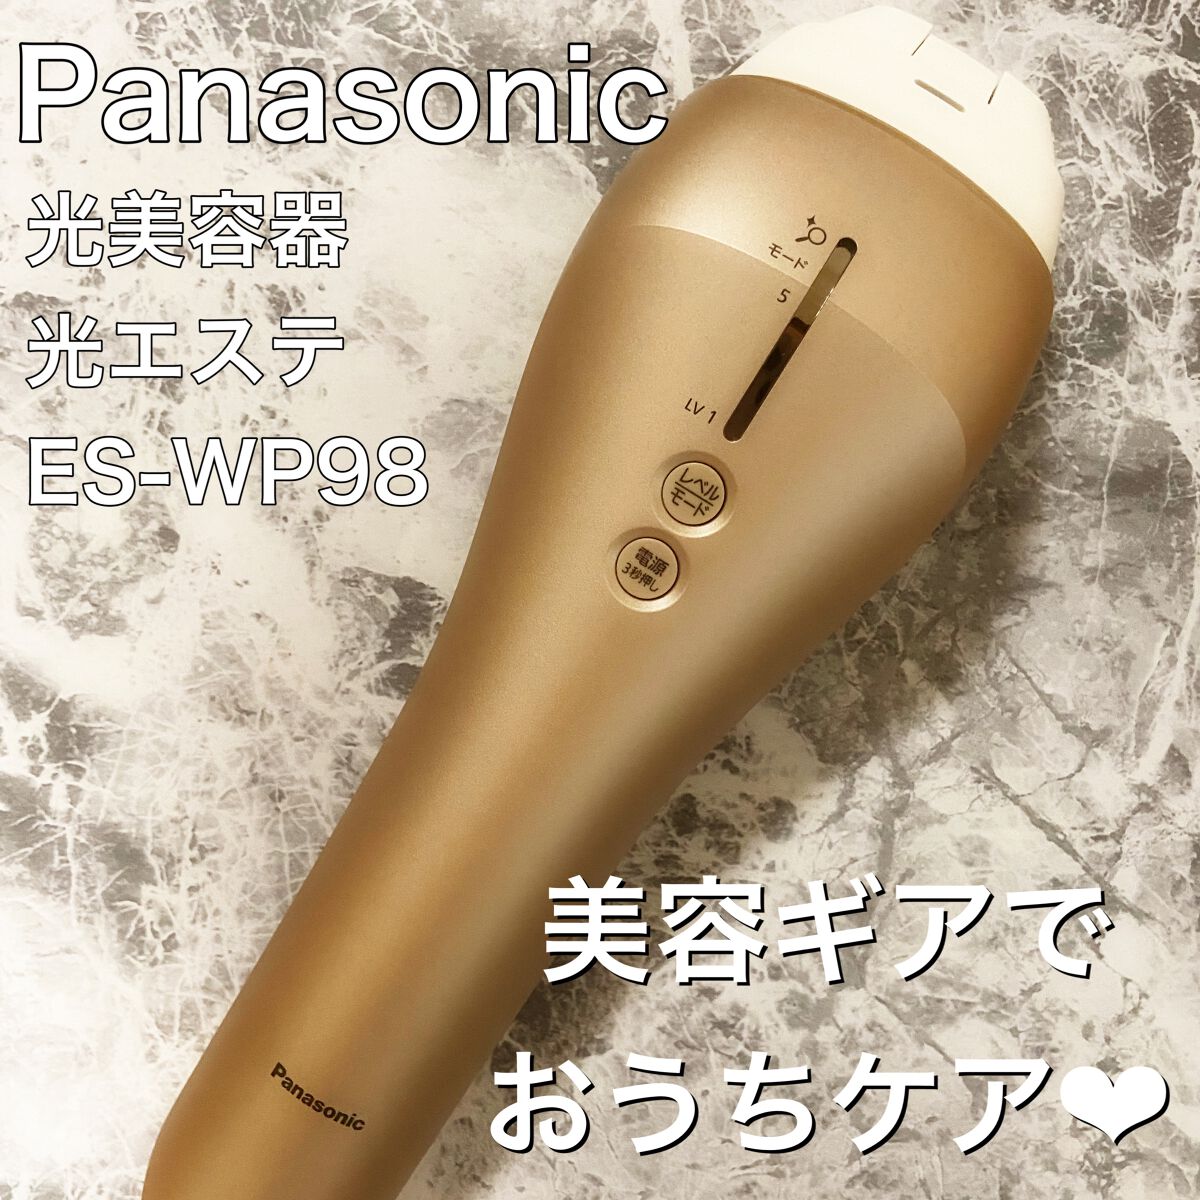 【箱なし】Panasonic 光エステ 光美容器 ES-WP98-N ハイパワー